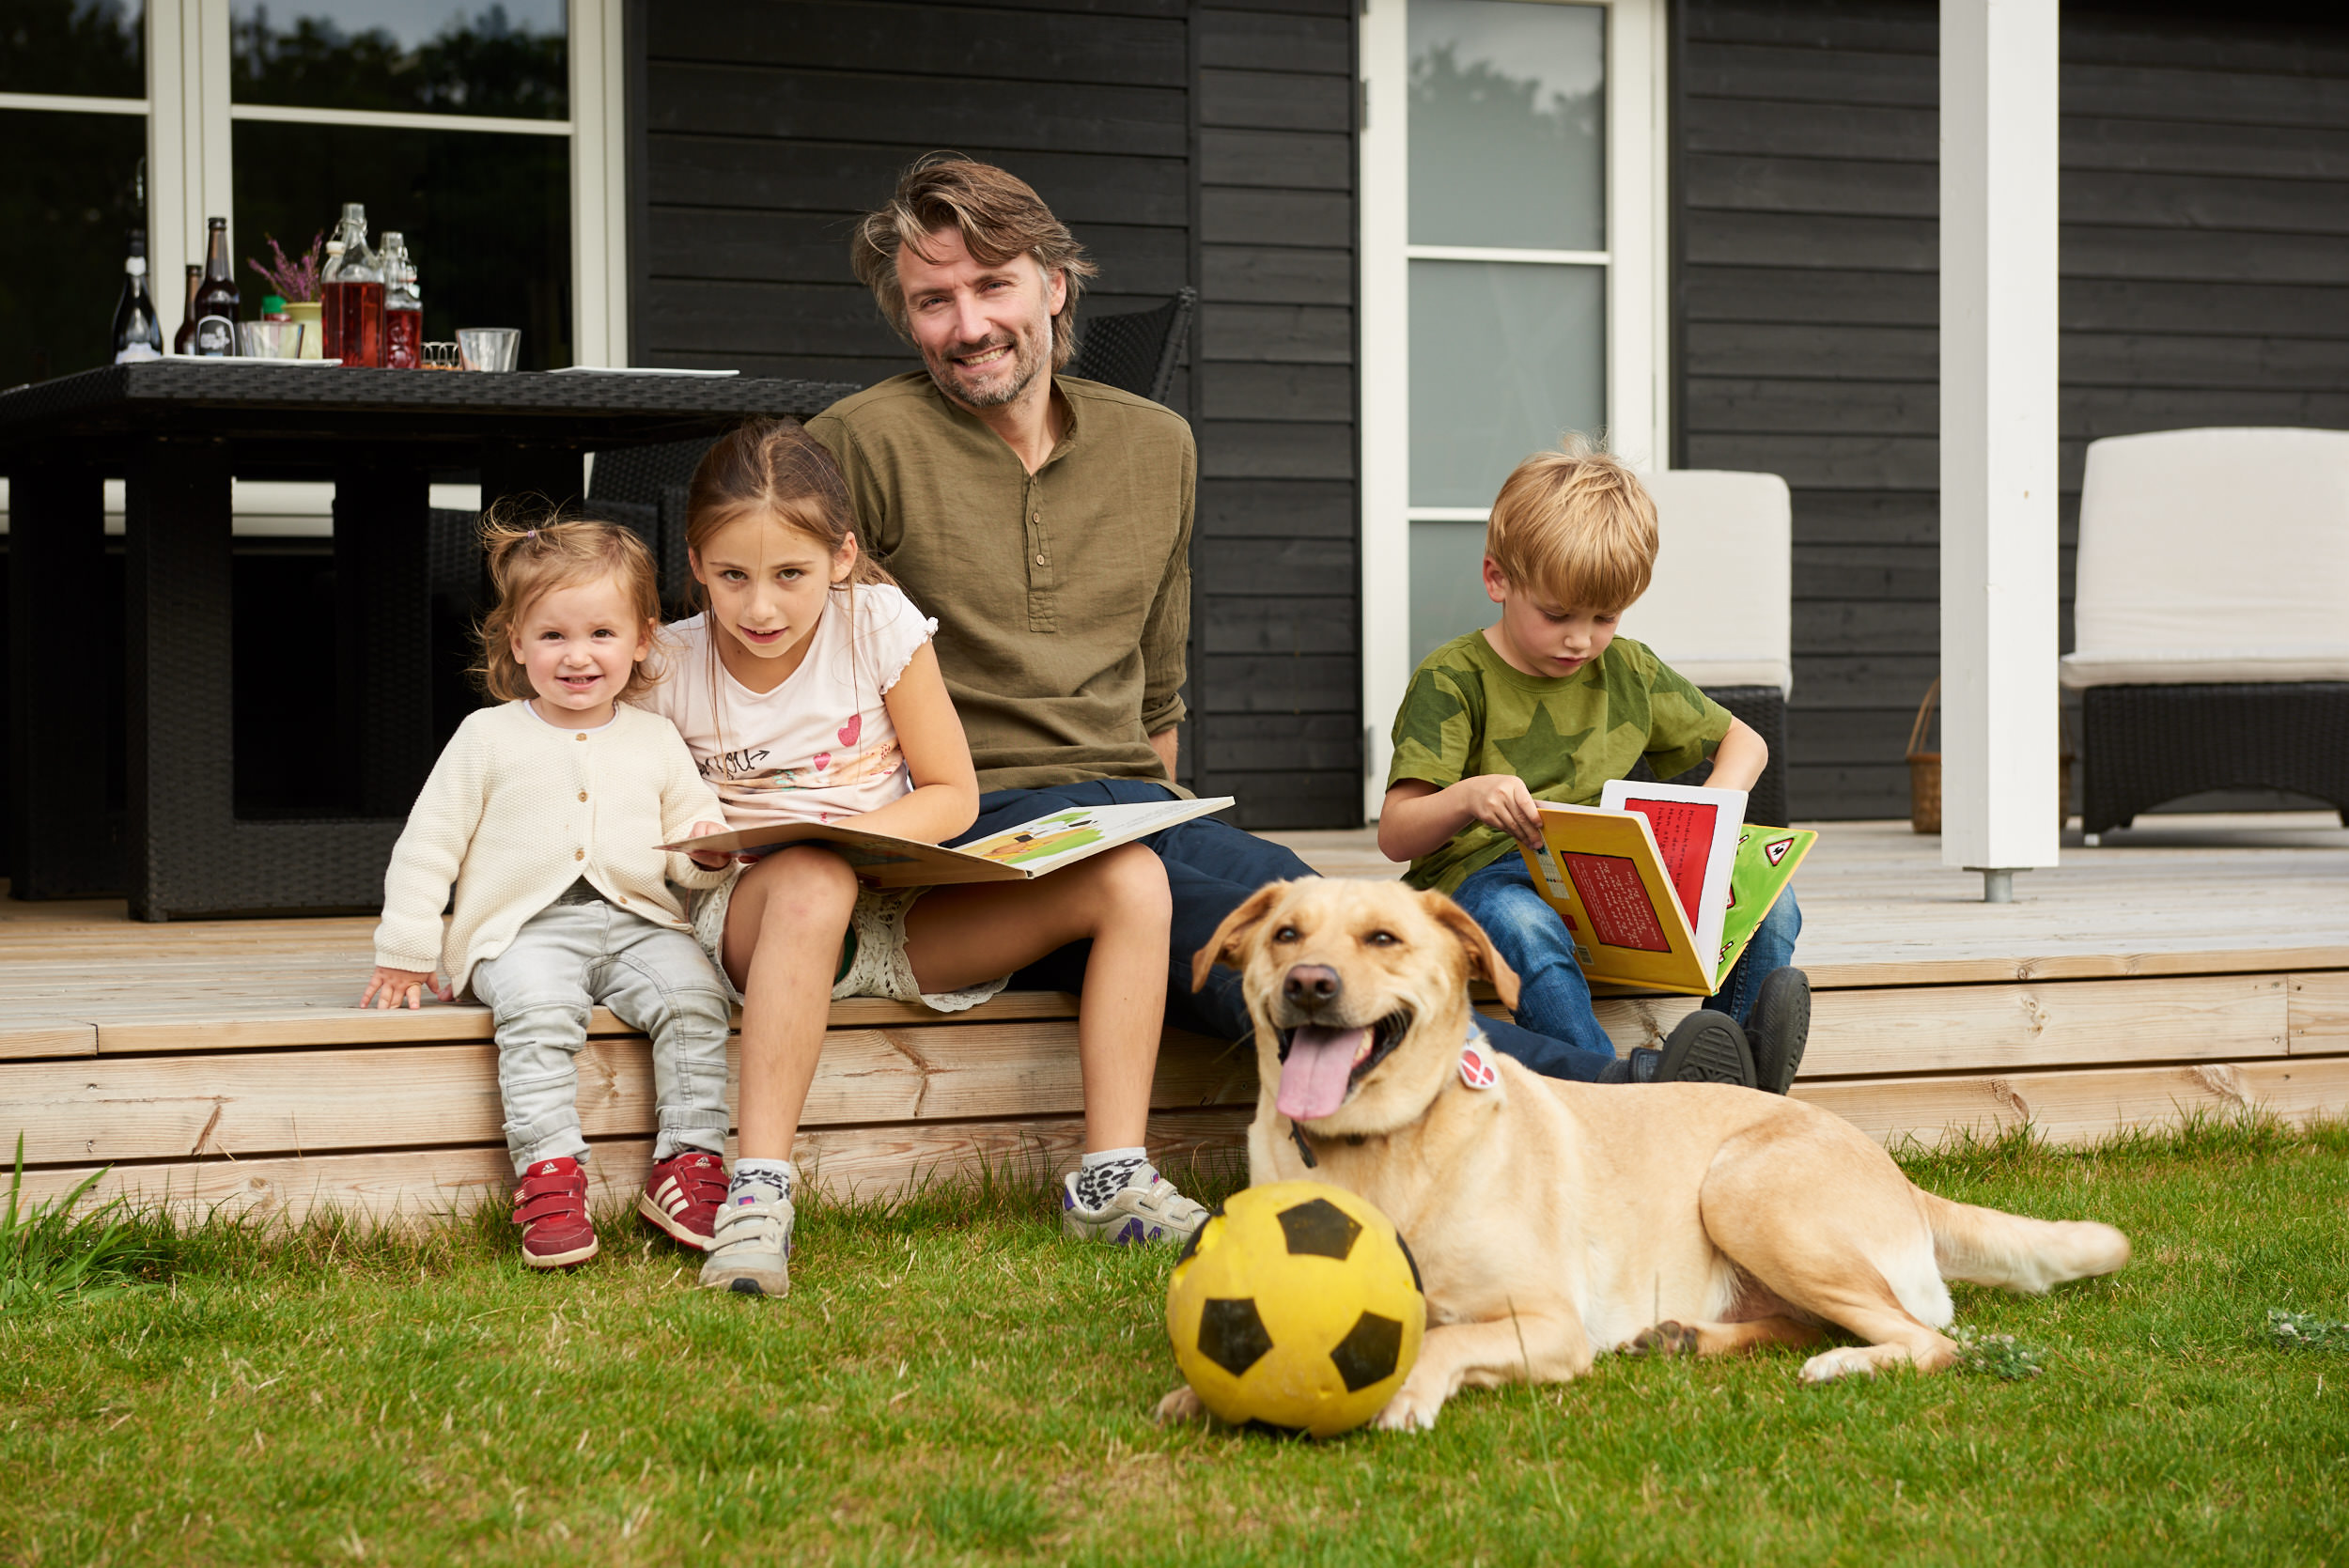 Far og børn hyggFar og børn feriehygger med hund ved sommerhus - fotografer med hund ved sommerhus - fotograf